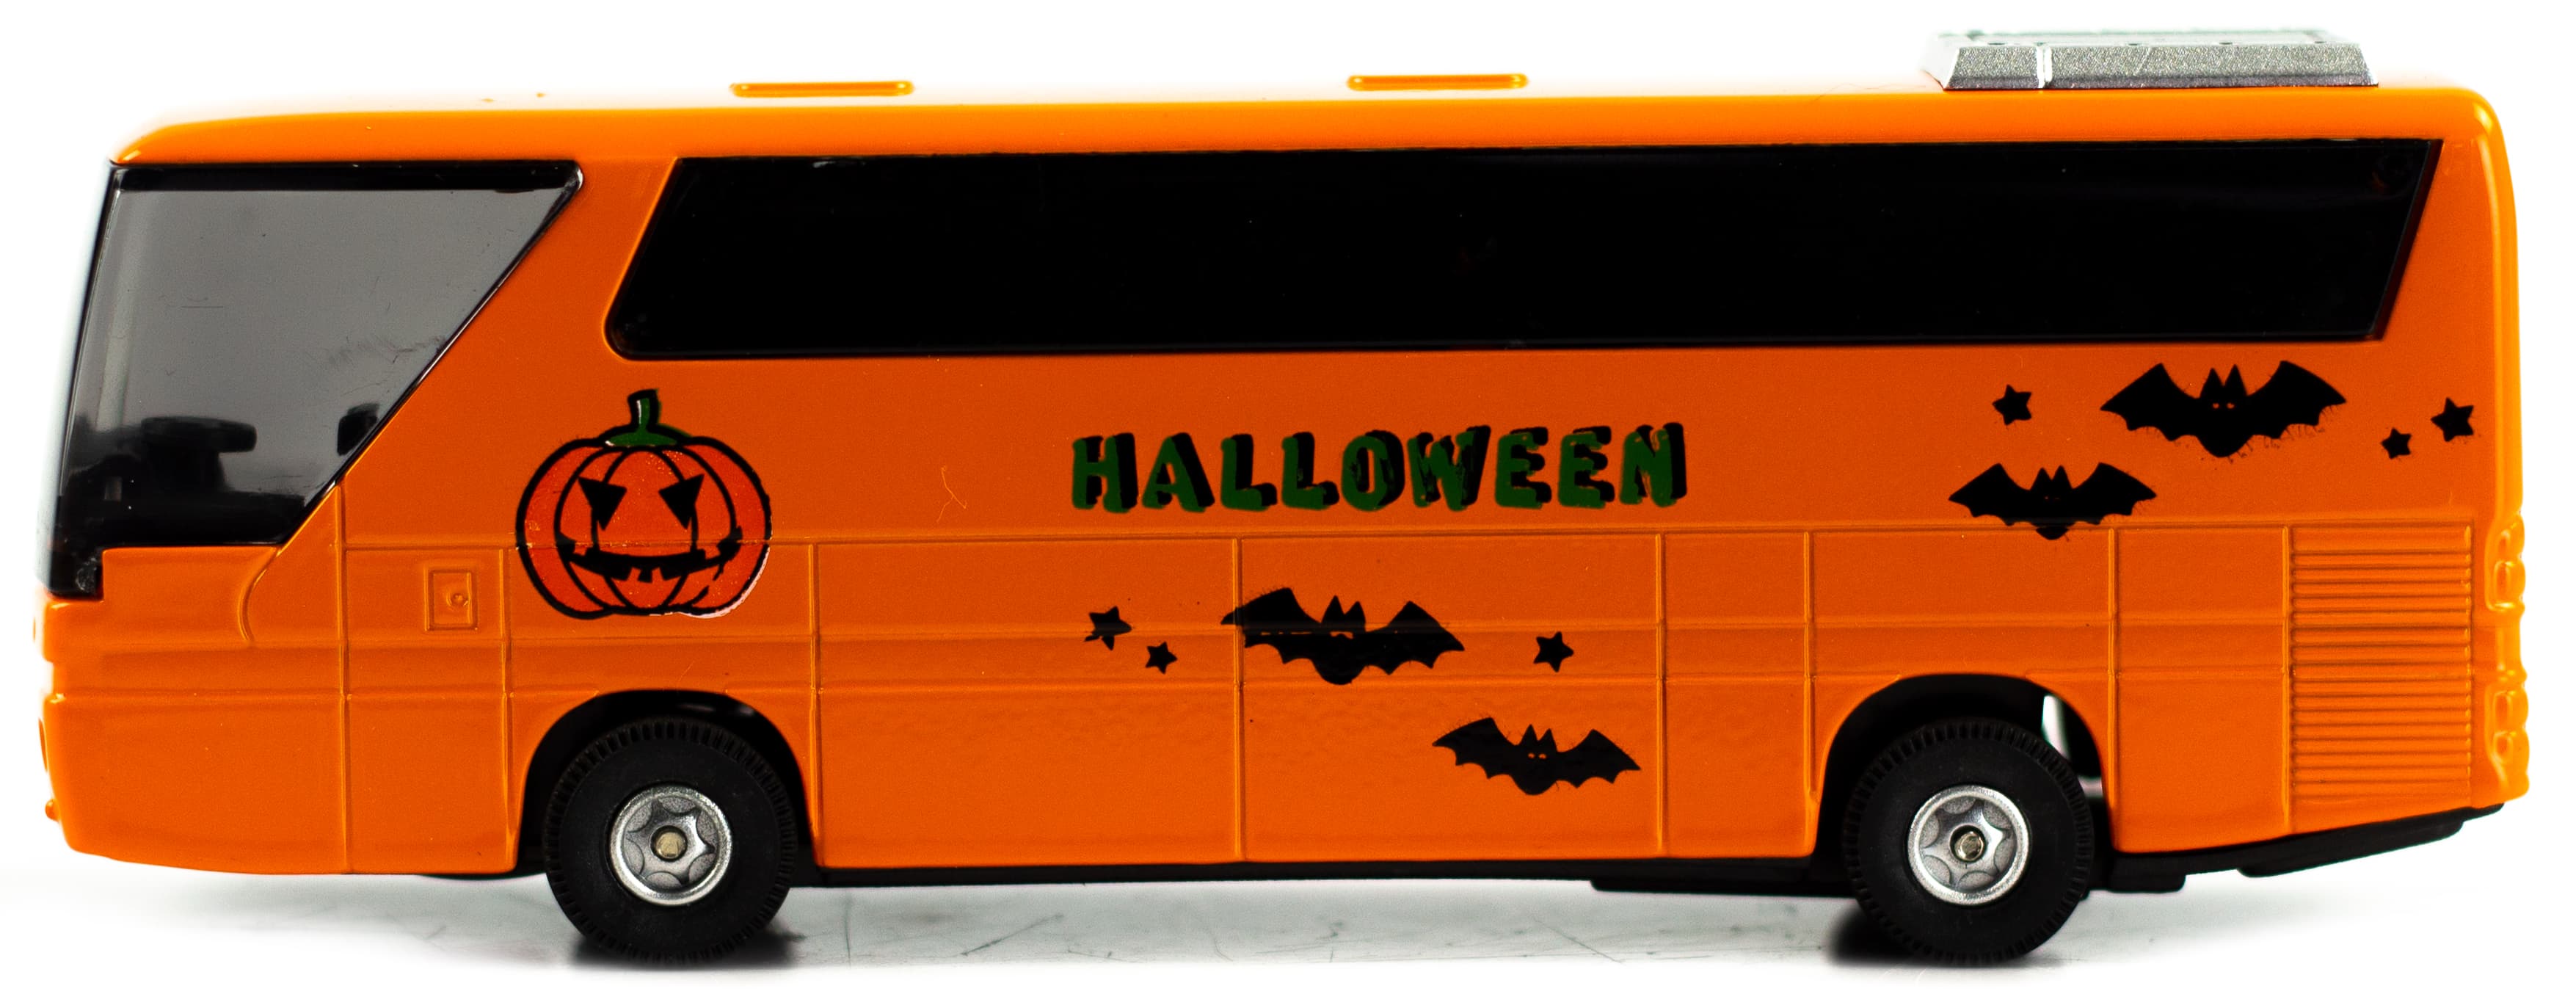 Машинка металлическая «Туристический автобус Halloween» 271CH, 14 см. инерционный, свет, звук / Оранжевый